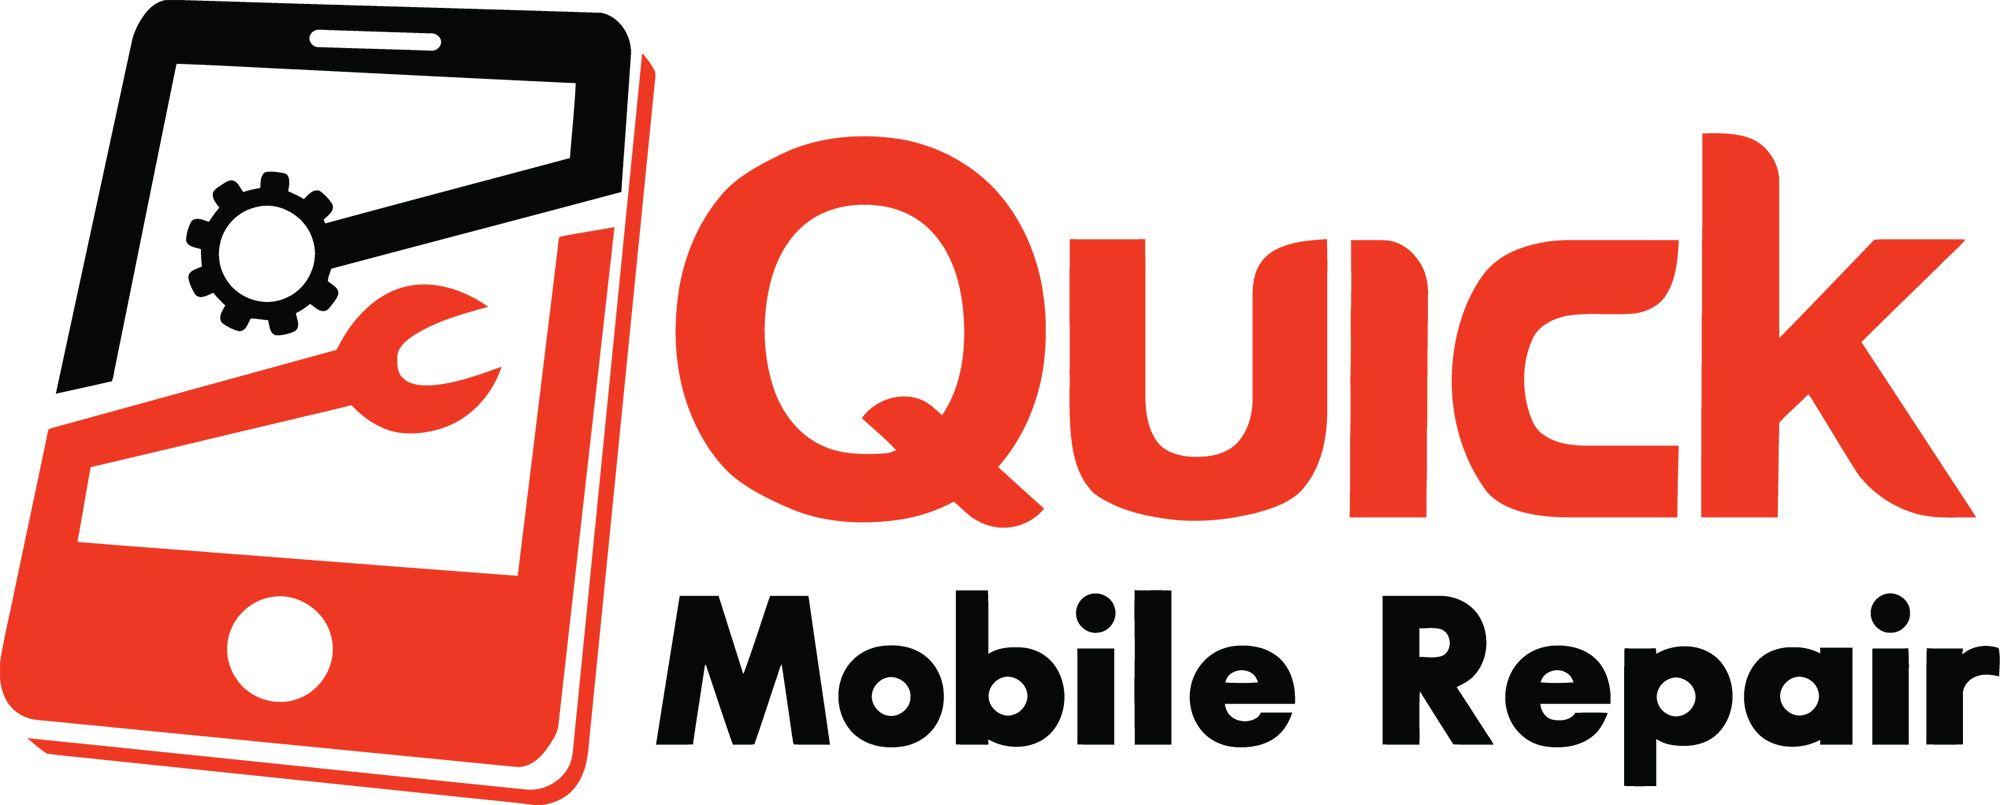 Phone Repair Logo - Mobile Phone Repair Shop Phoenix, AZ | Mobile Phone Repair Shop Near ...